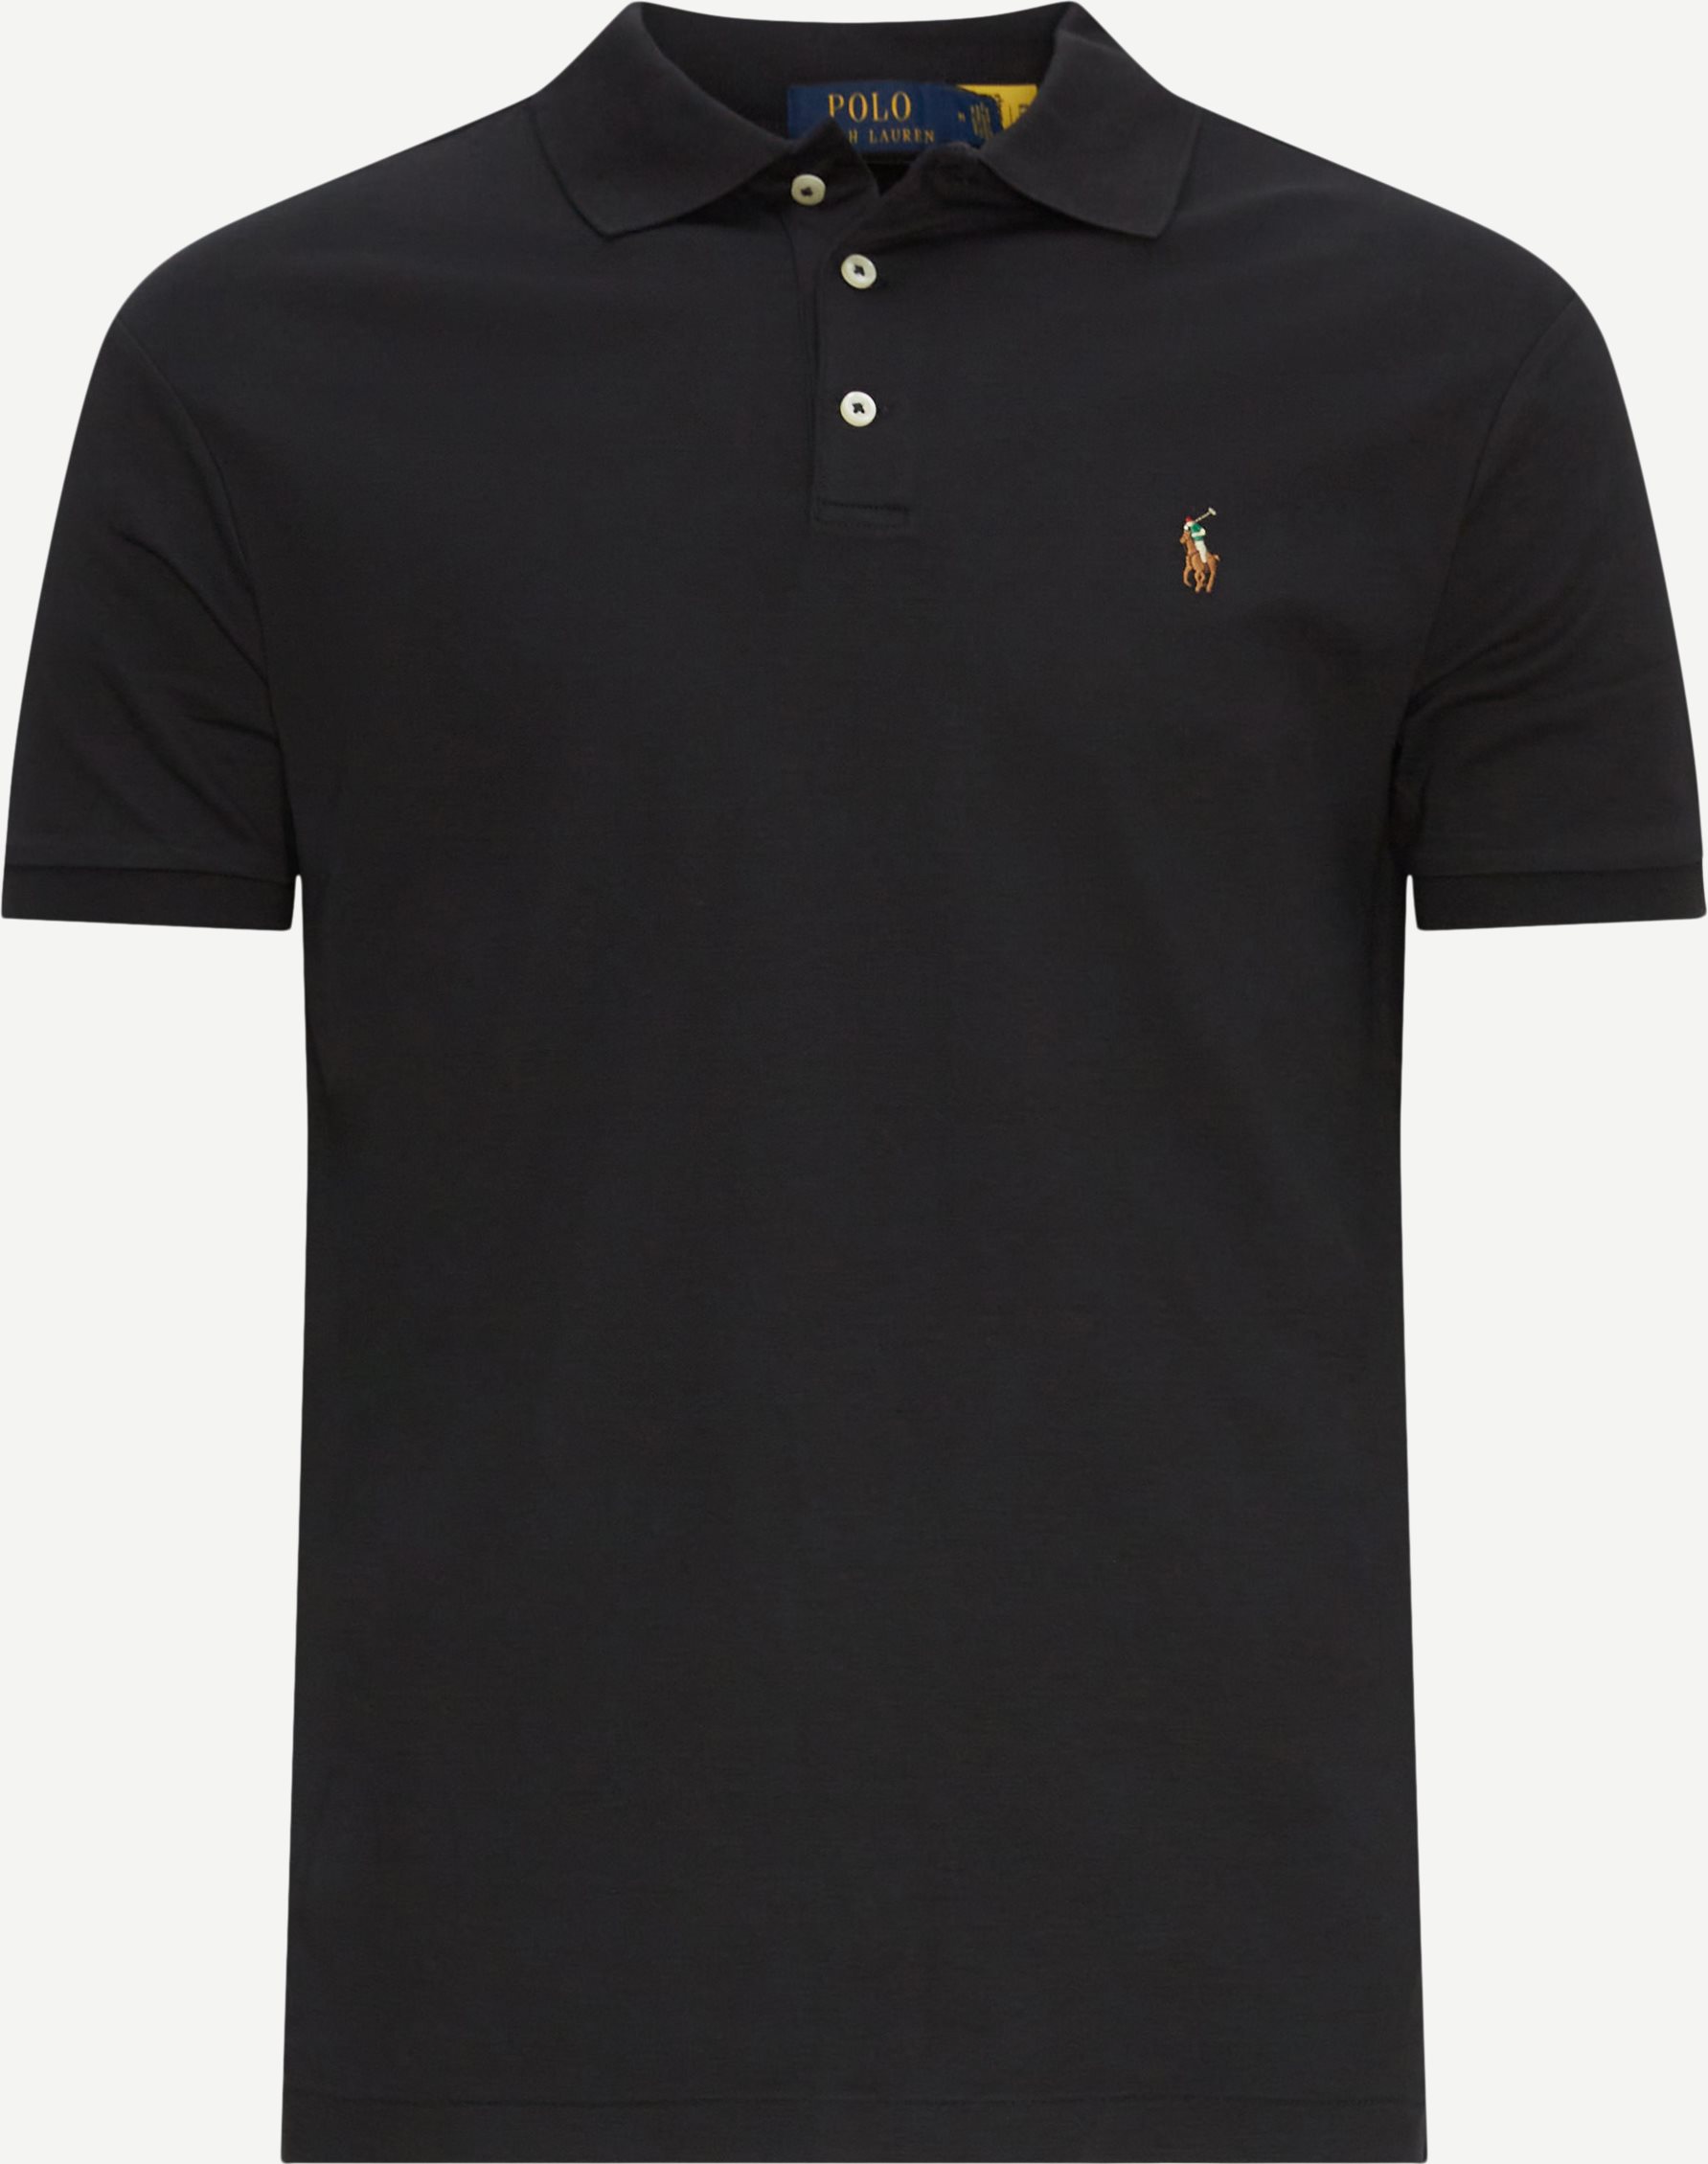 Polo Ralph Lauren T-shirts 710704319/710713130 Sort